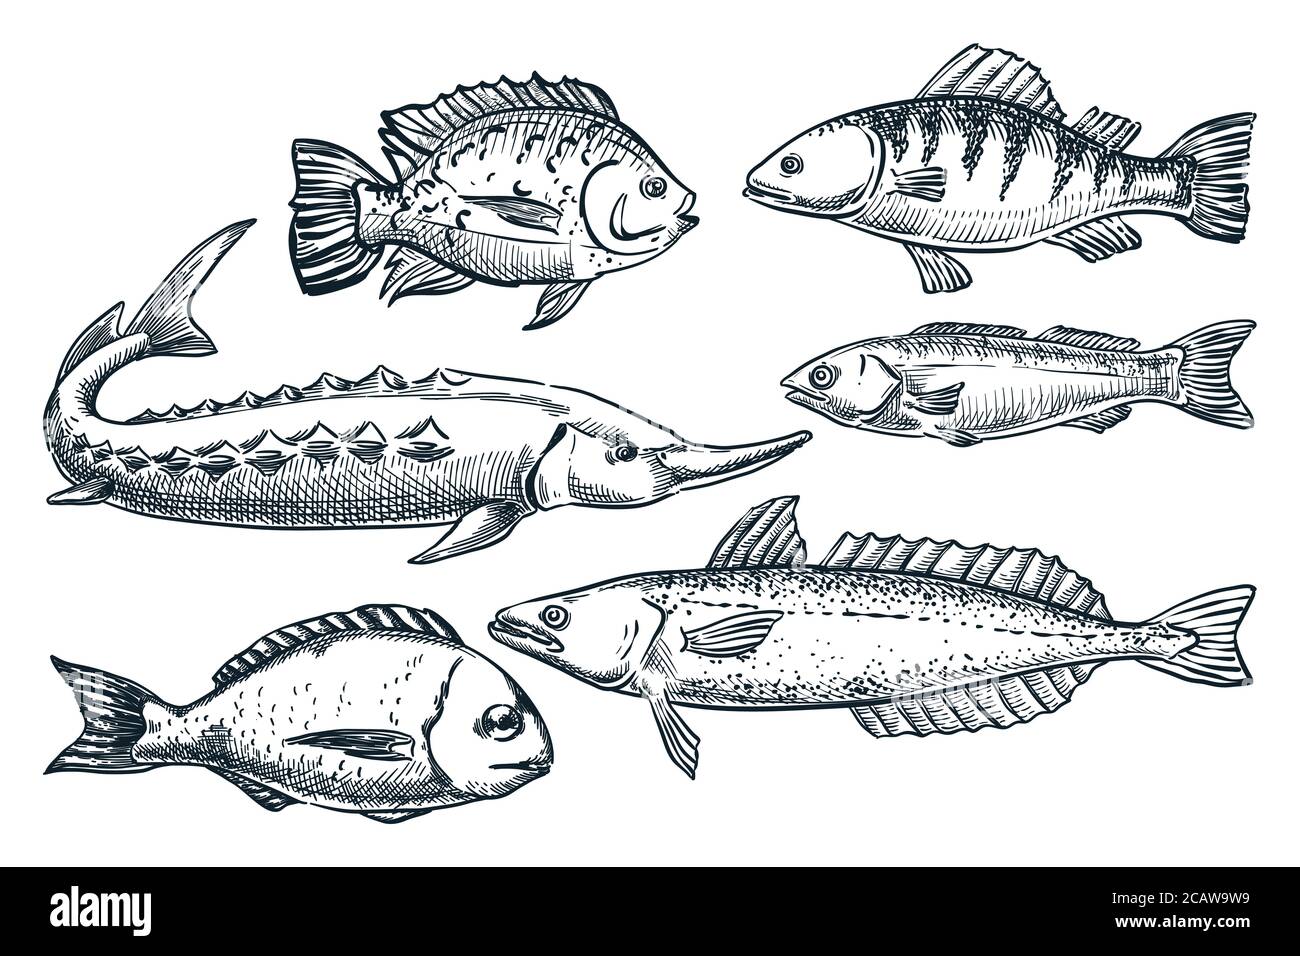 Meerfische Set, isoliert auf weißem Hintergrund. Handgezeichnete Skizzenvektordarstellung. Meeresfrüchte Markt Lebensmittel Design Elemente. Doodle Zeichnung von Stör, Stock Vektor